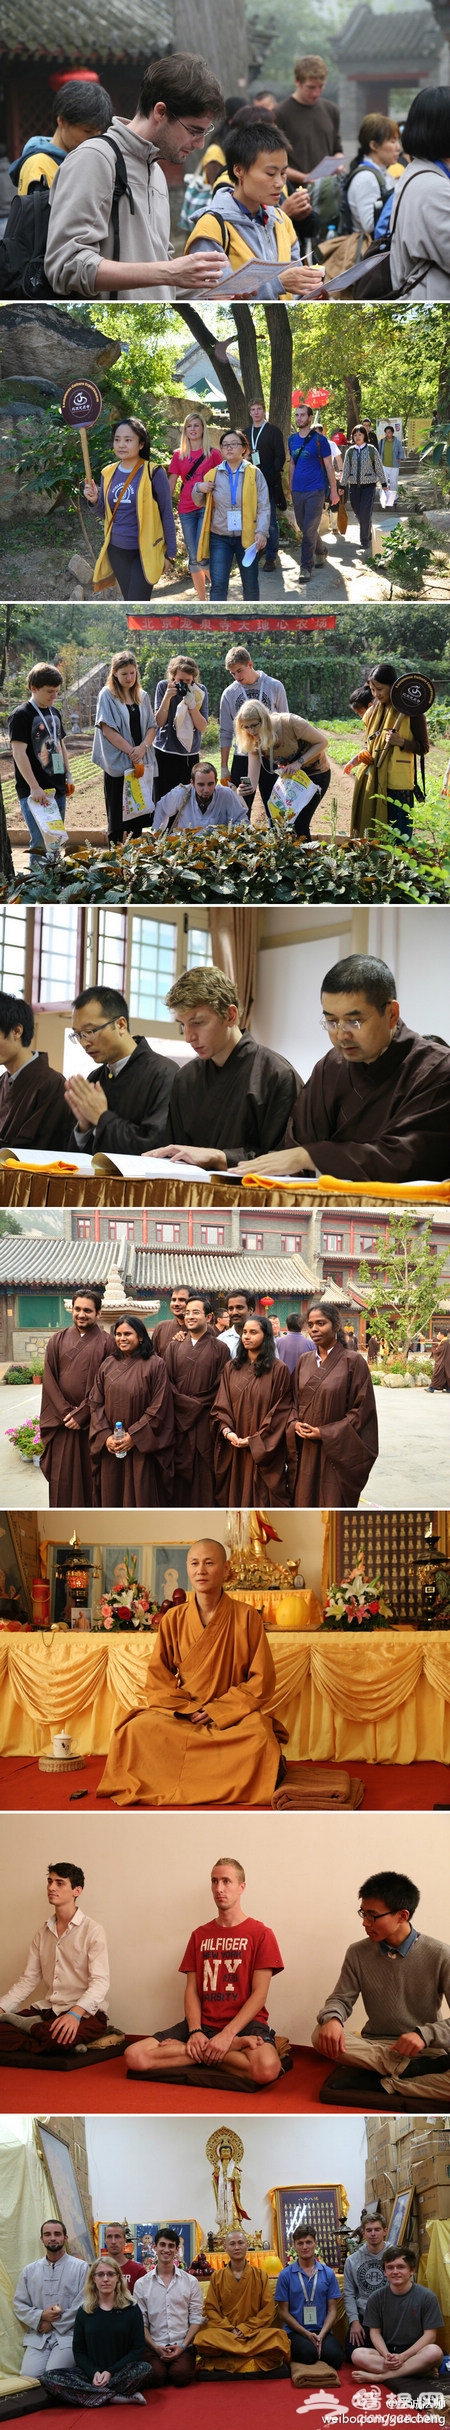 龙泉寺举办为时七天的中国传统文化体验活动